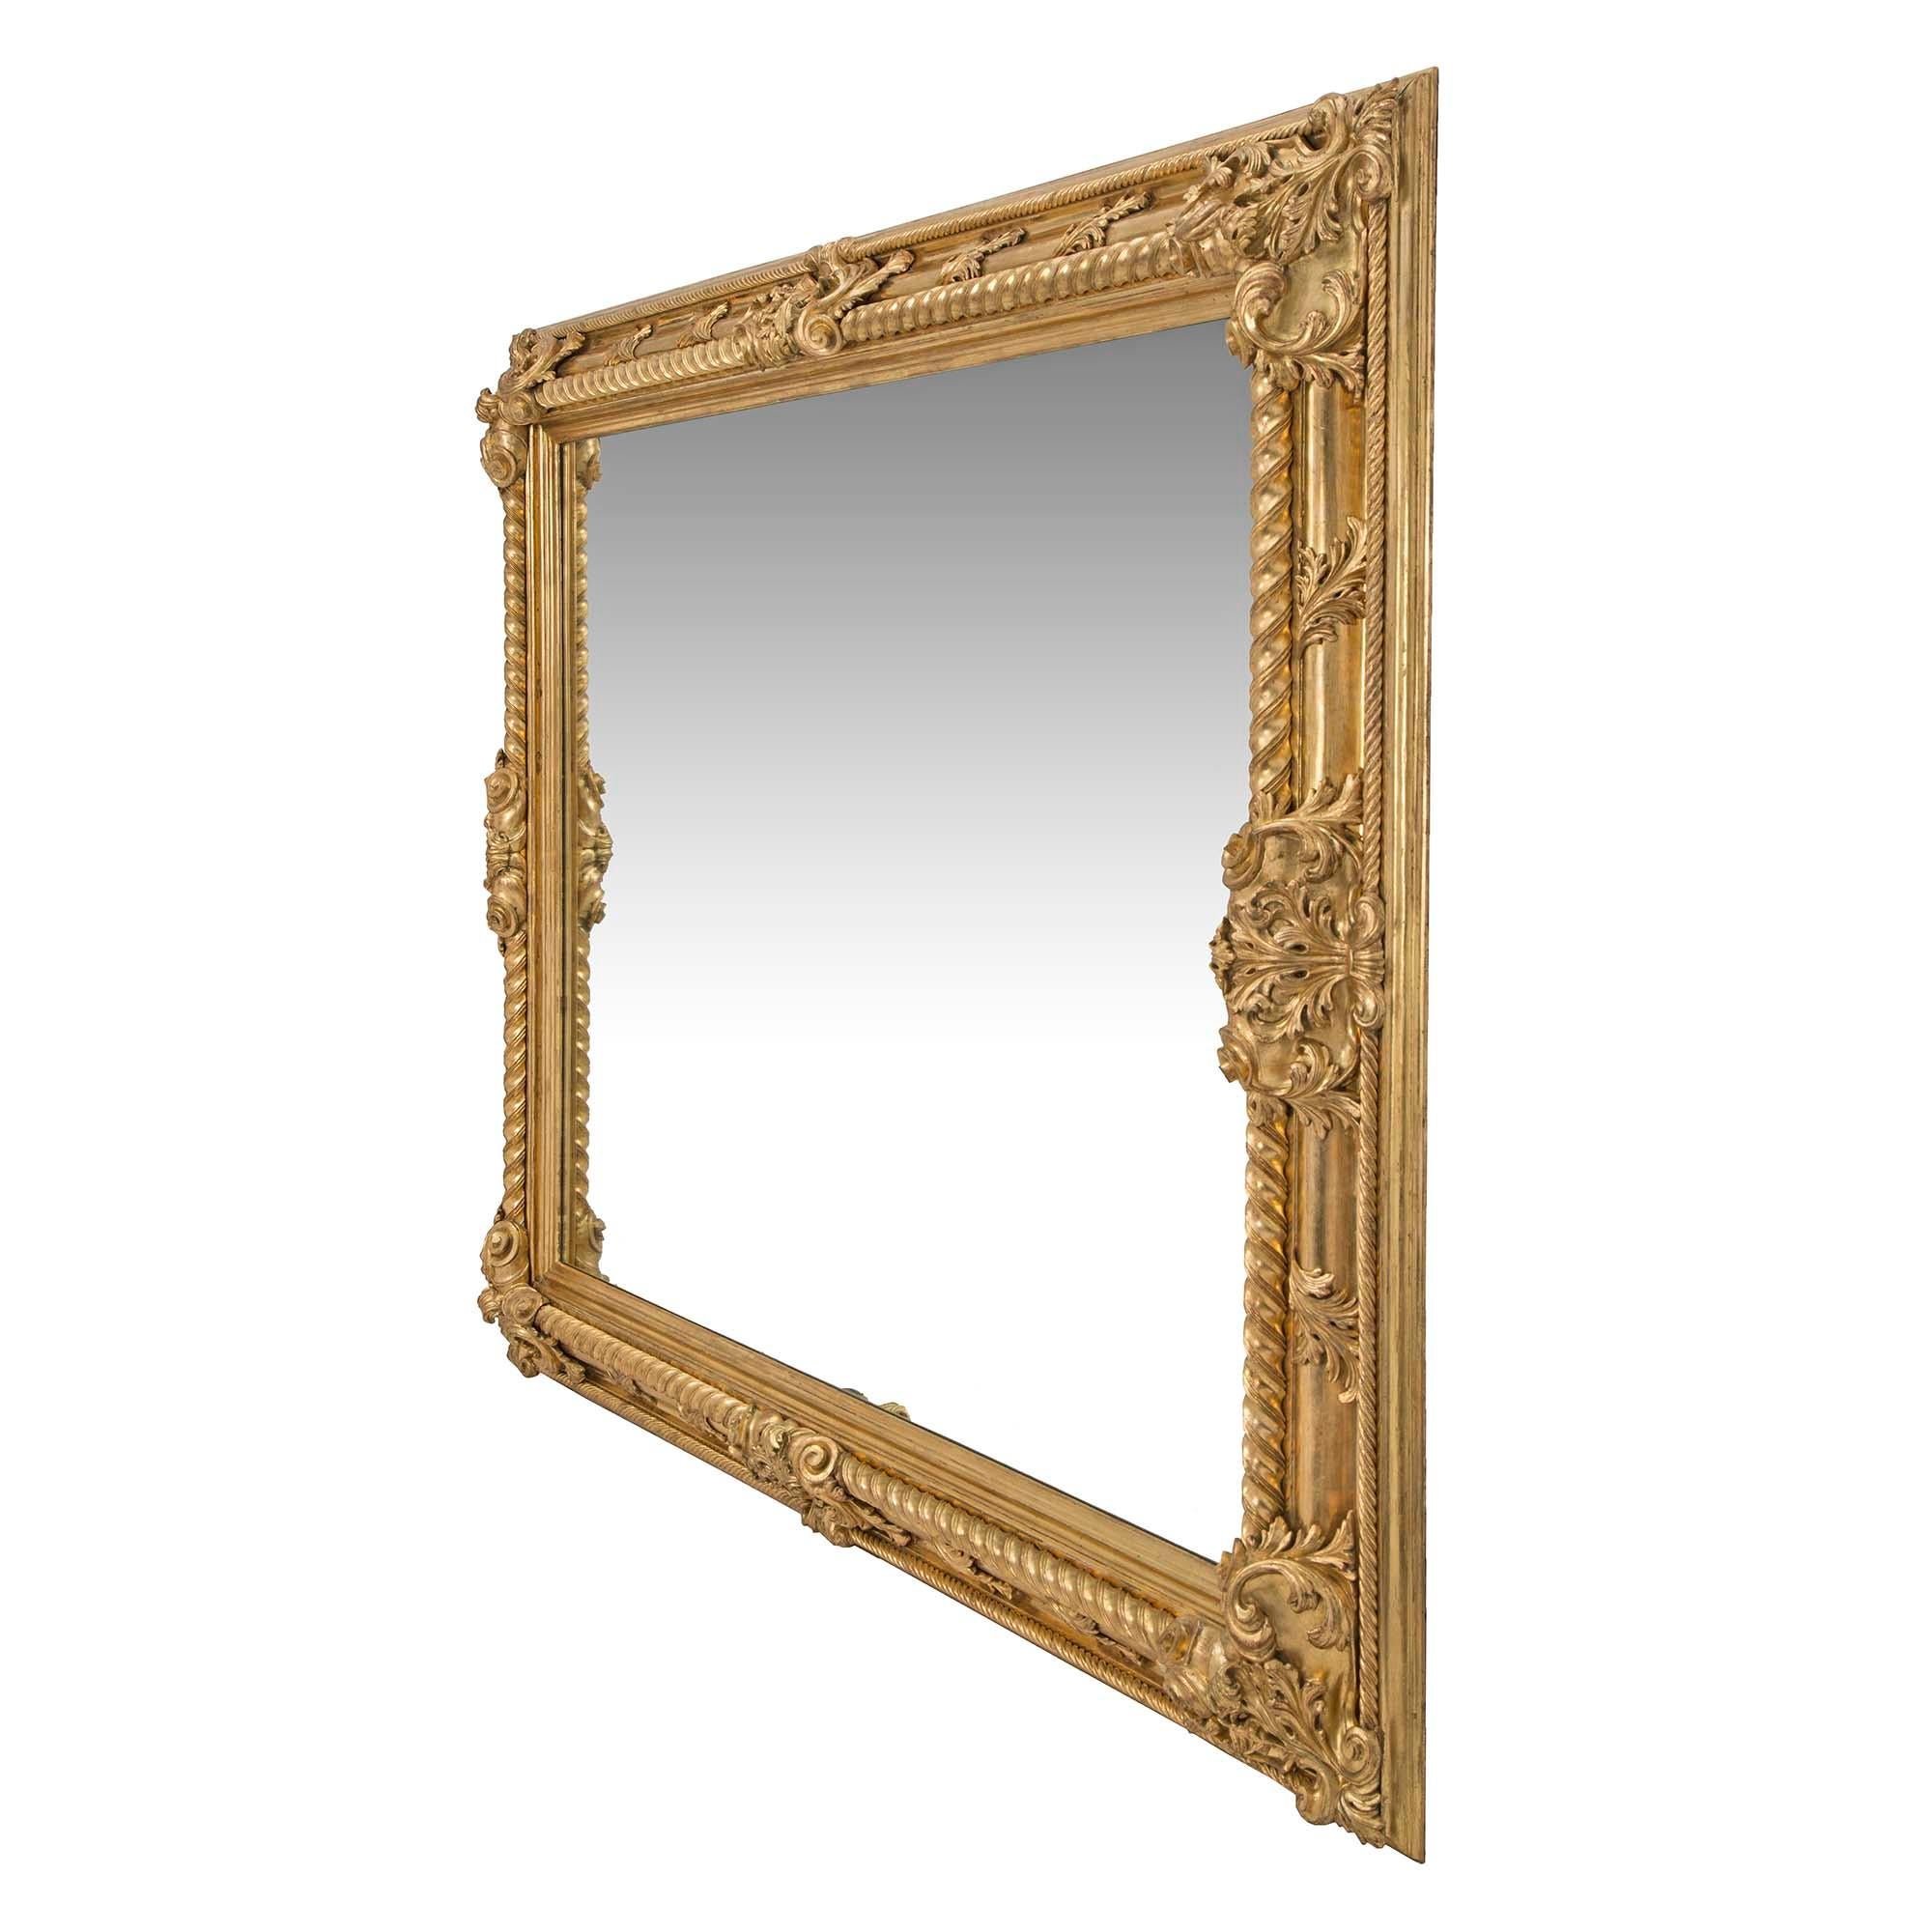 Miroir rectangulaire en bois doré de grande taille, de style Louis XIV, datant du XIXe siècle. Le miroir finement sculpté présente une bordure intérieure et extérieure en ruban torsadé, accentuée à chaque coin et sur les côtés par des motifs de